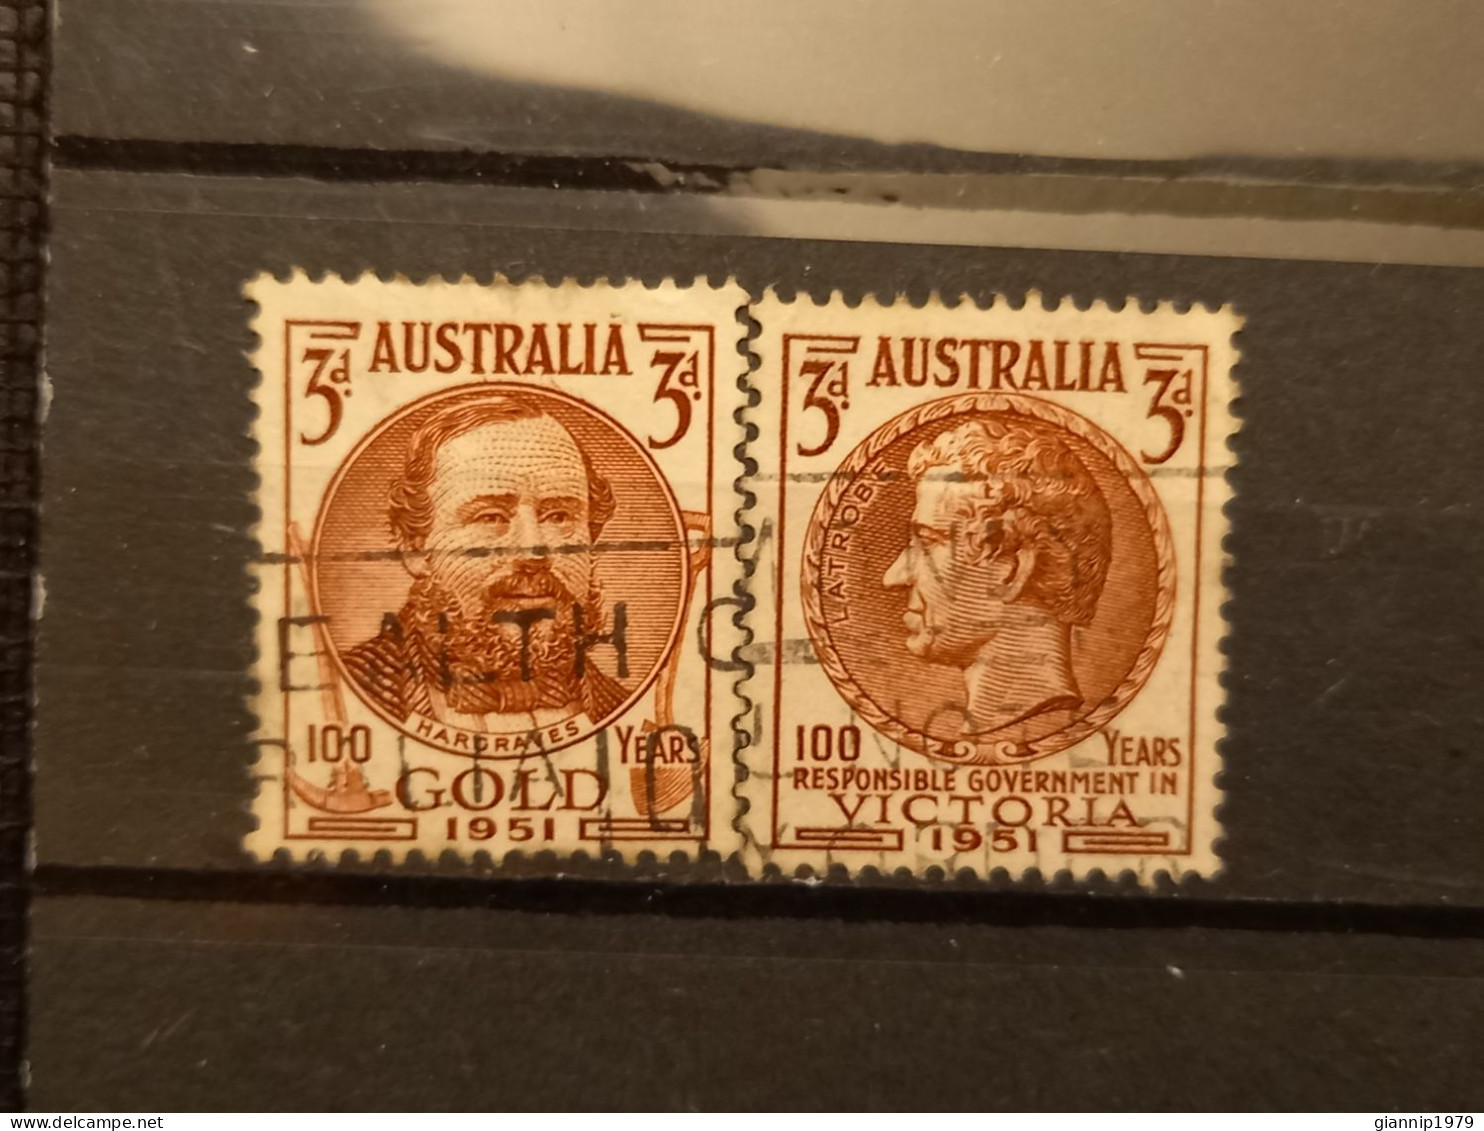 FRANCOBOLLI STAMPS AUSTRALIA AUSTRALIAN 1951 USED SERIE COMPLETE COMPLETA 100 ANNI ANNIVERSARY ORO VICTORIA OBLITERE' - Usati